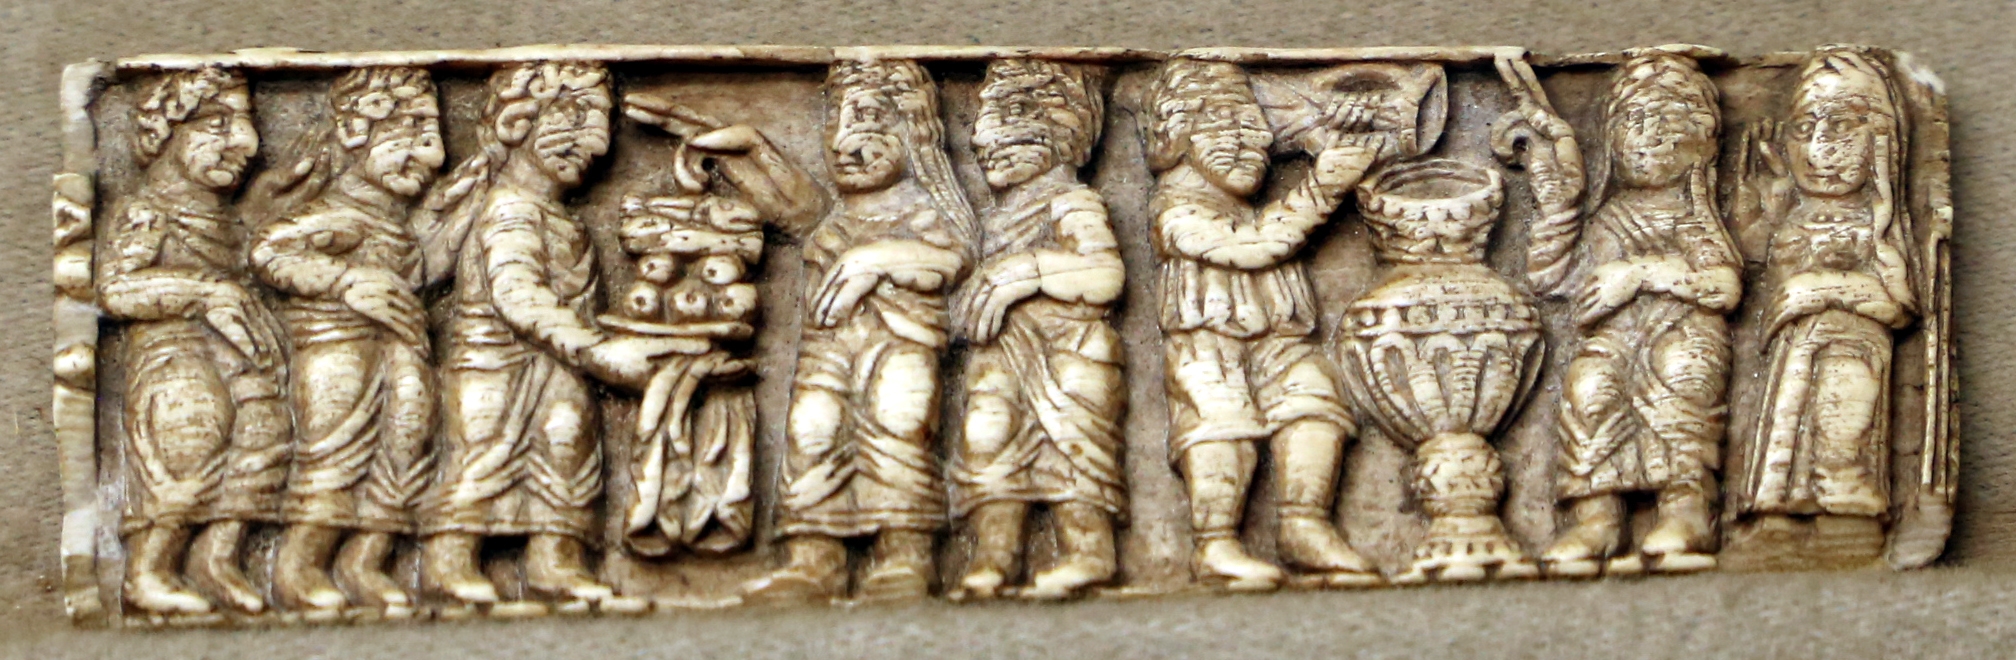 Arte copta, bassorilievo in avorio con scene della vita di cristo (miracolo della moltiplicazione dei pani e pesci e nozze di cana), IV secolo - Sailko